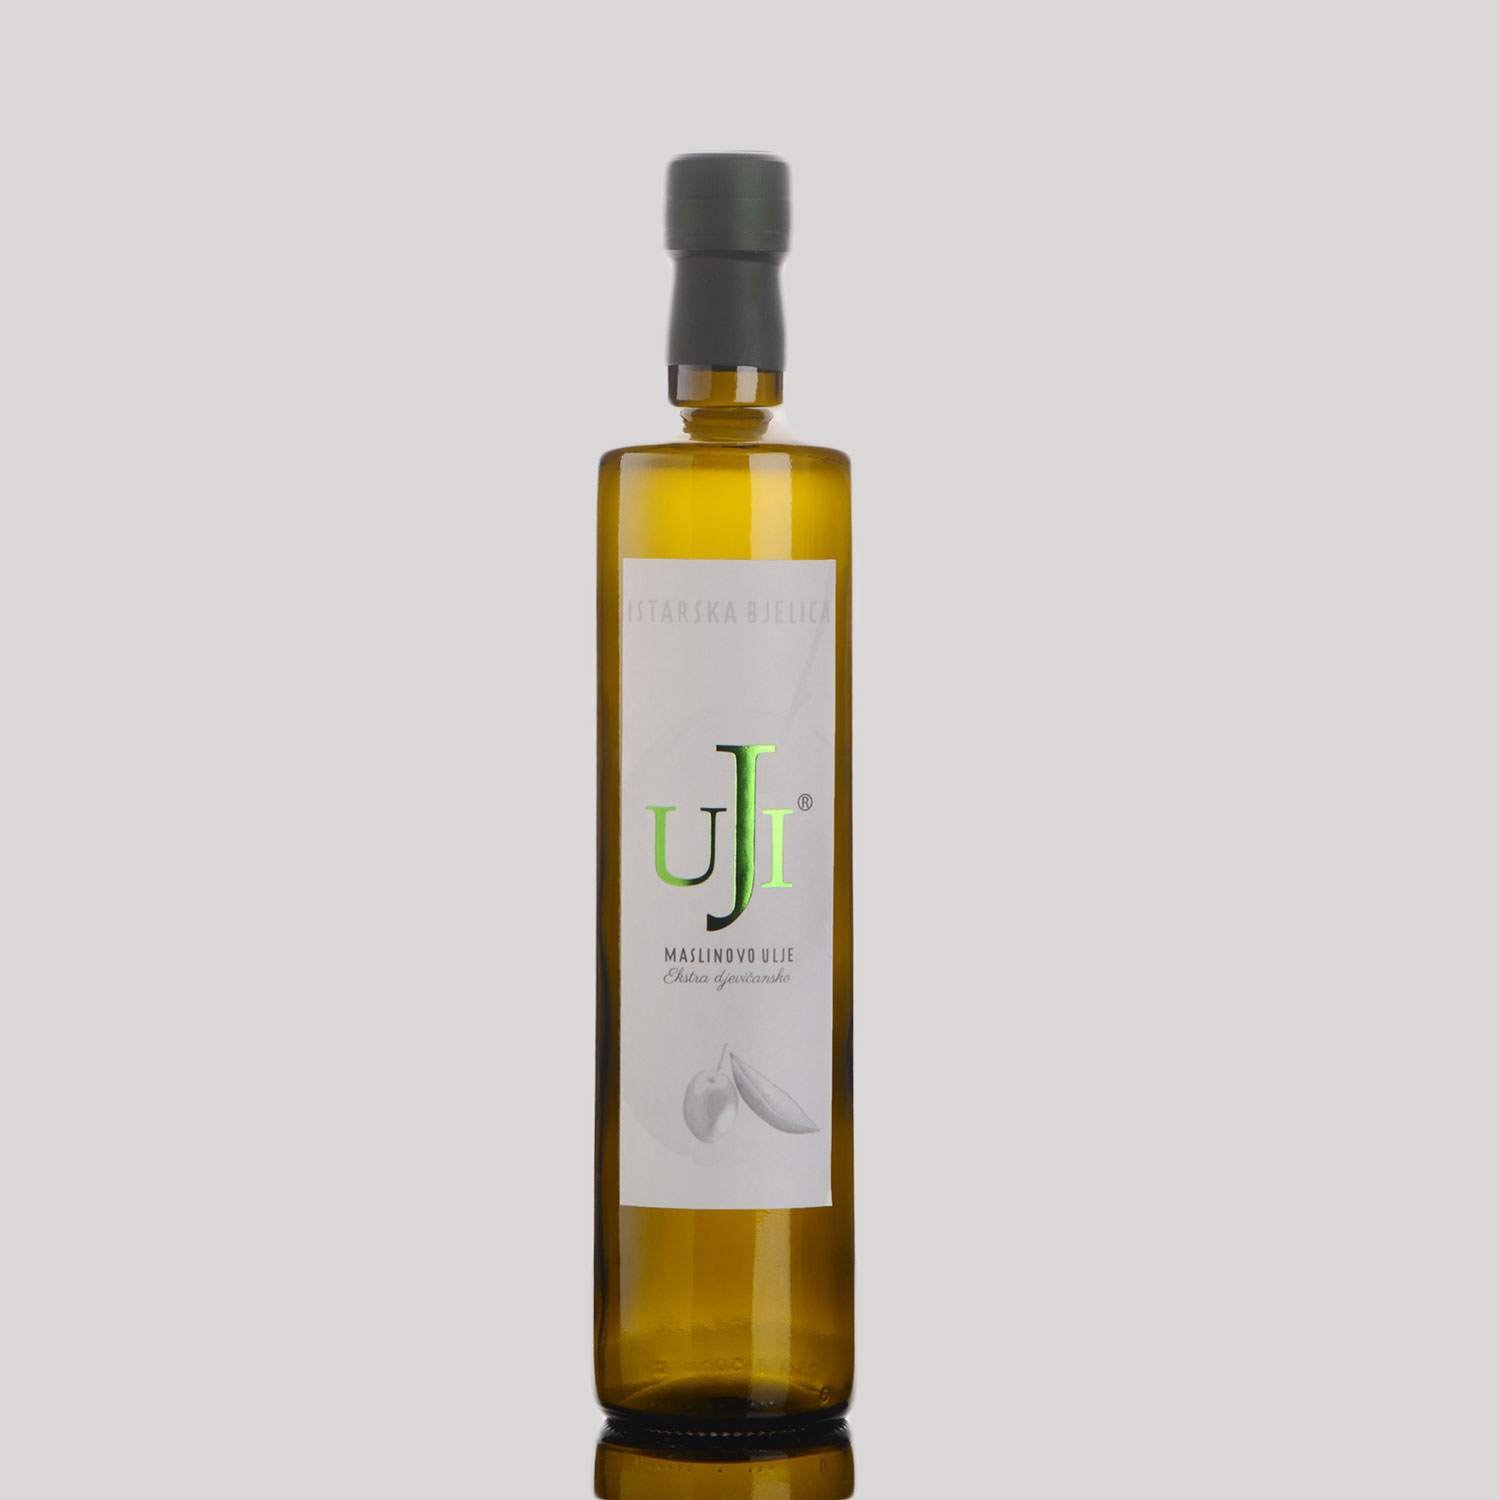 Olive oil Istarska Bjelica » UJI SHOP